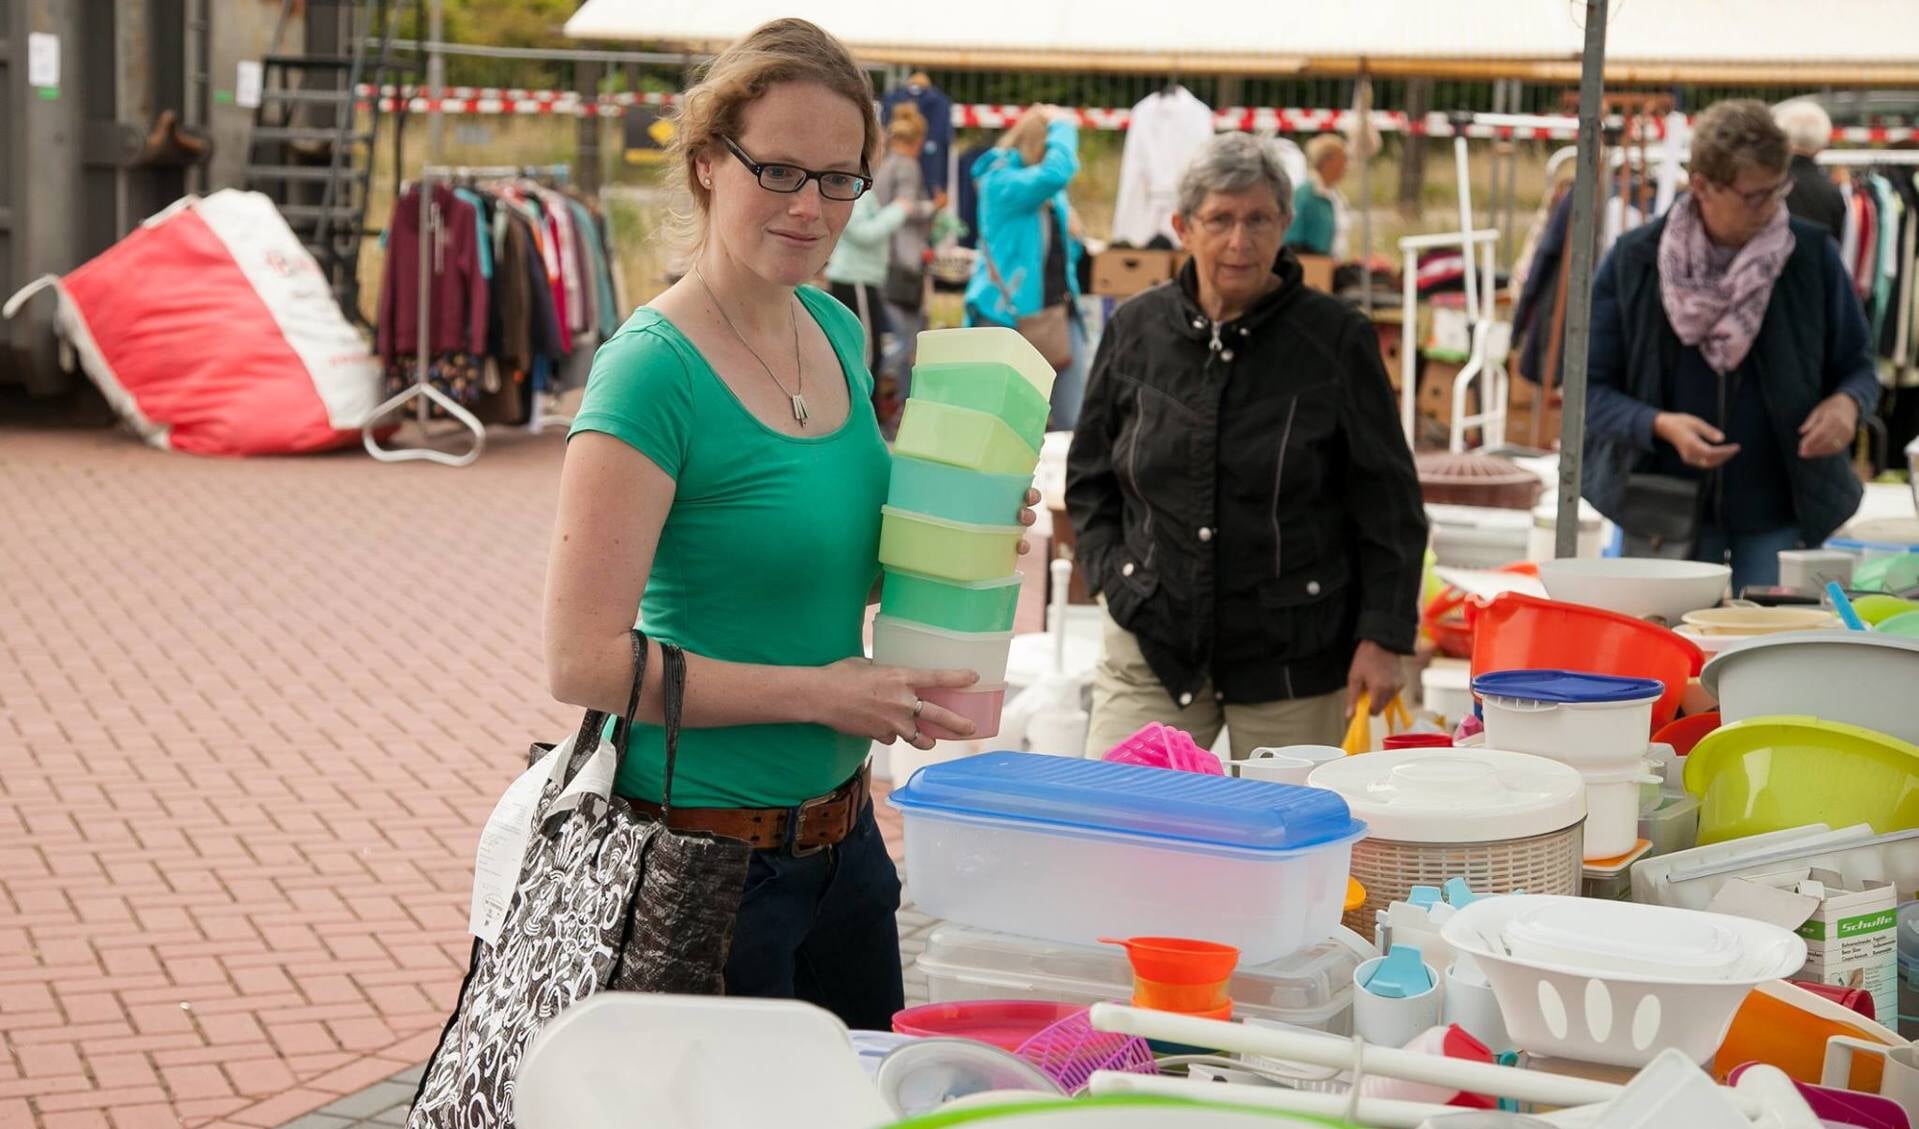 De kraam met tupperware trok tijdens de rommelmarkt van afgelopen zaterdag de nodige klandizie. Foto: Marco ter Haar.